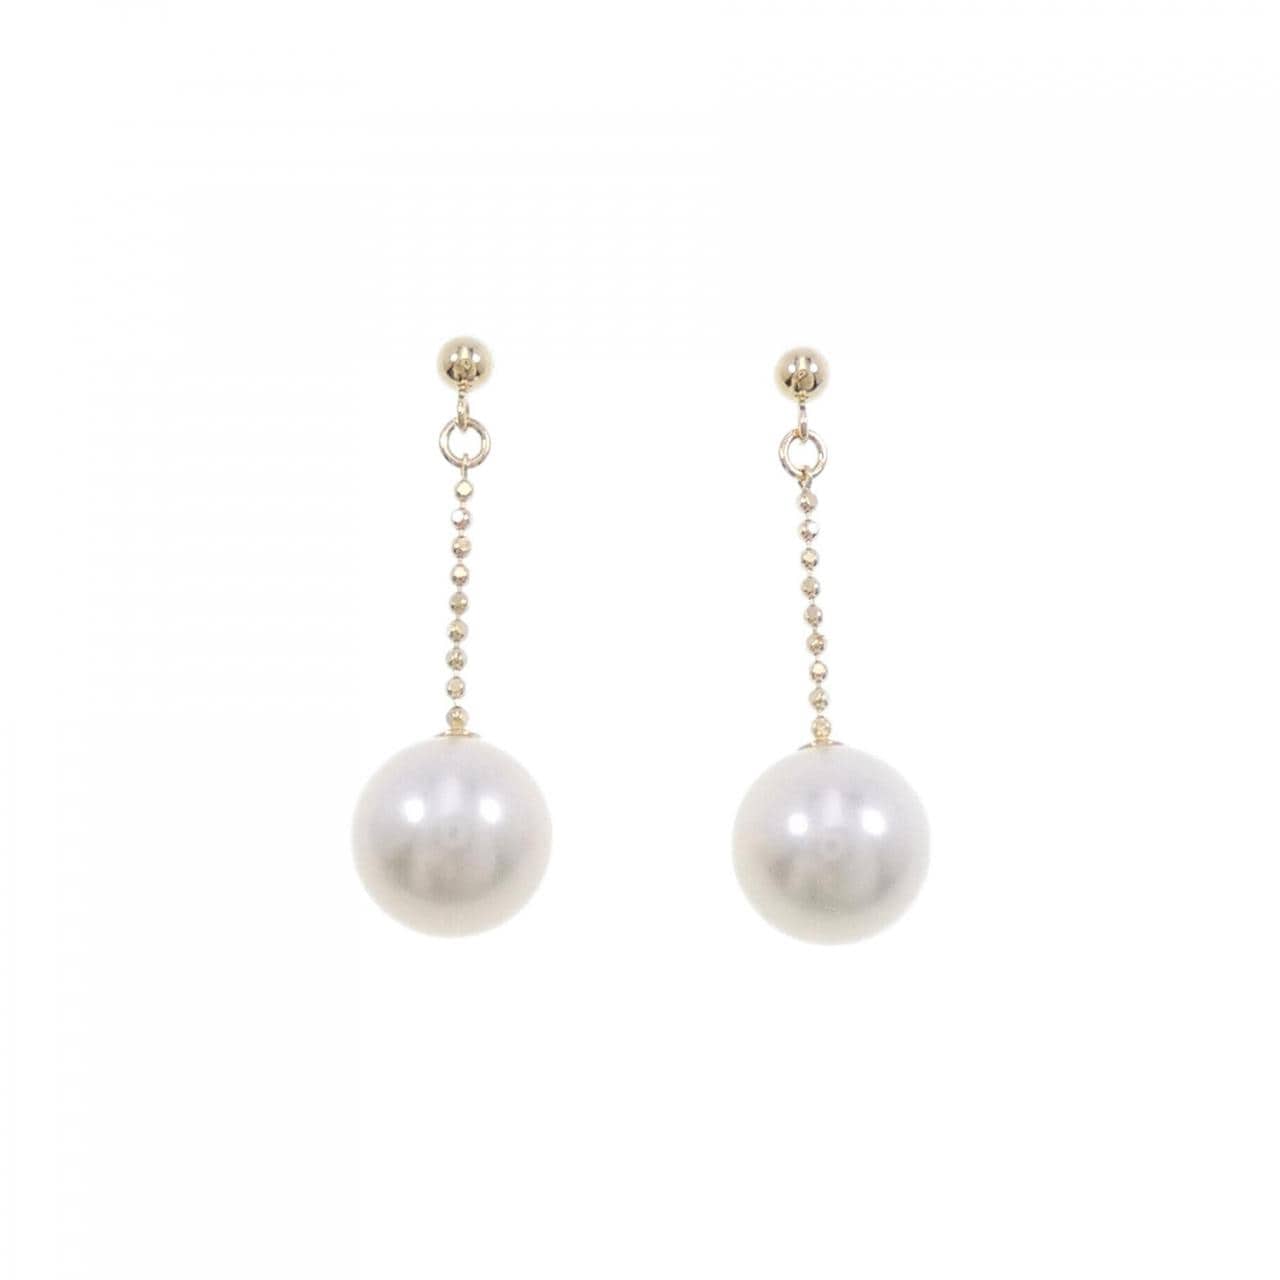 K18YG Akoya pearl earrings 8.2mm